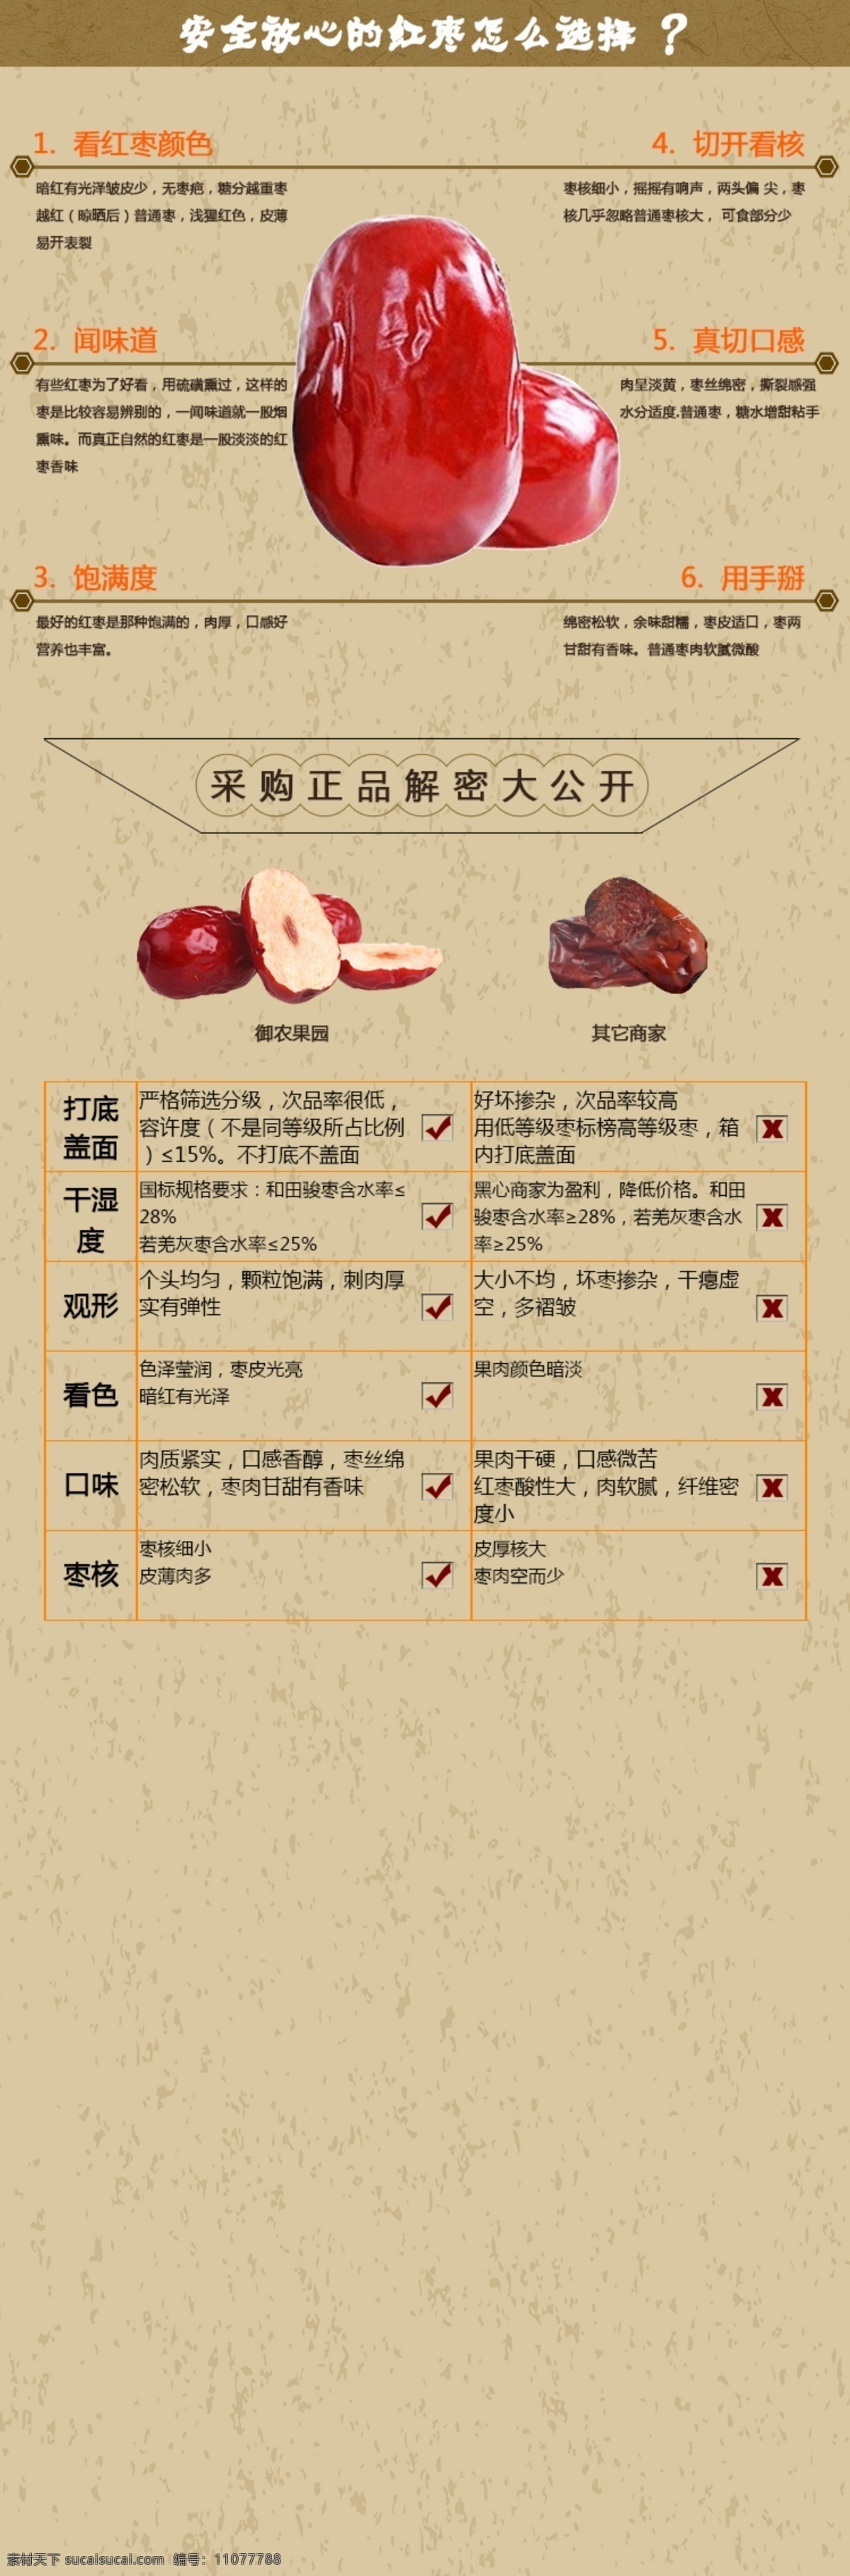 红枣 选择 特点 淘宝产品介绍 红枣产品说明 采购解密 原创设计 原创淘宝设计